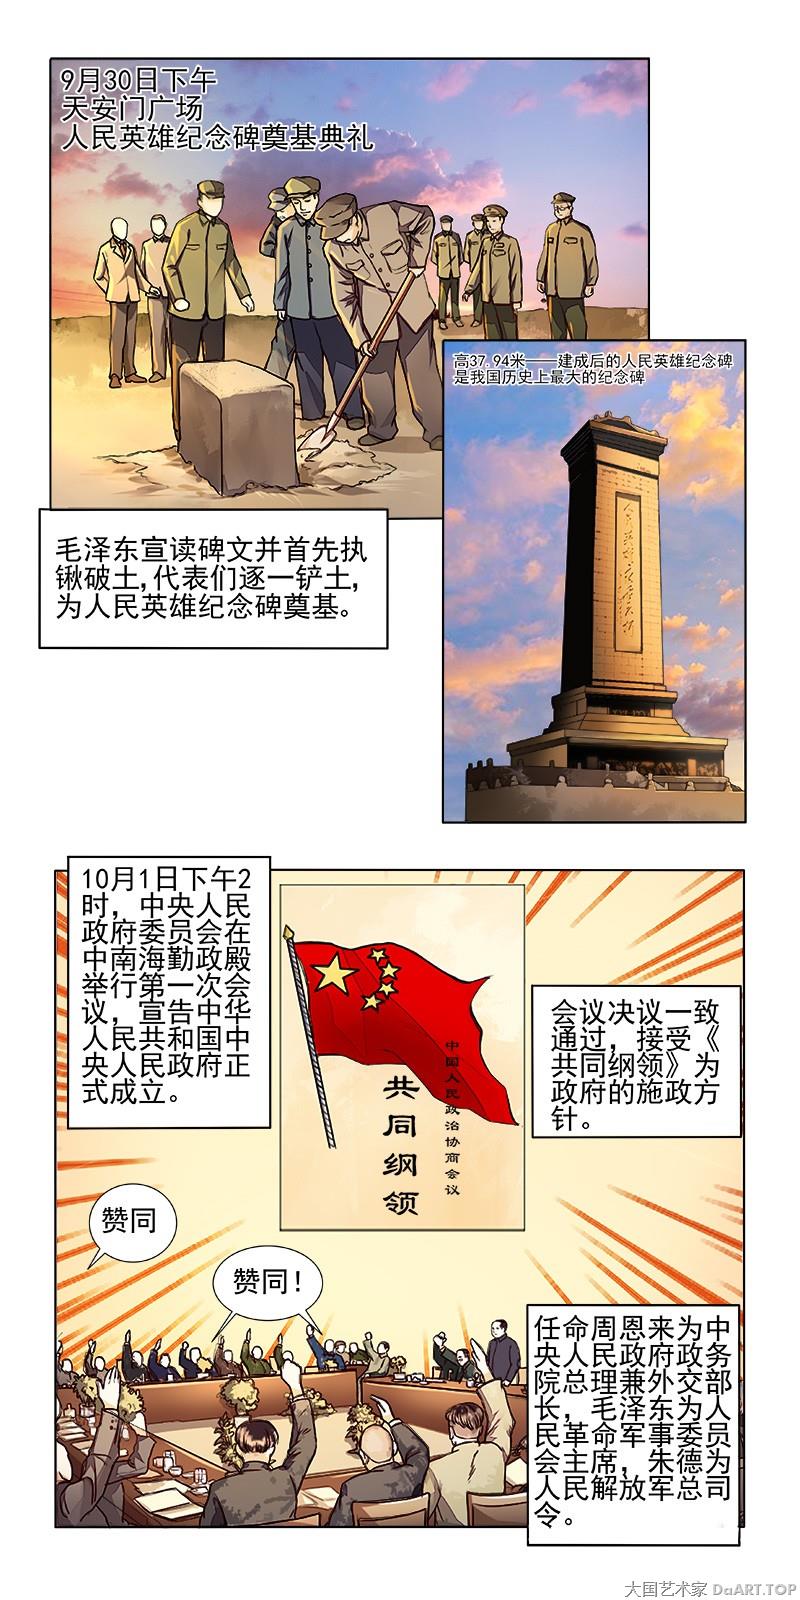 《庆祝新中国成立70周年党史新中国史系列漫画》以手绘漫画结合历史